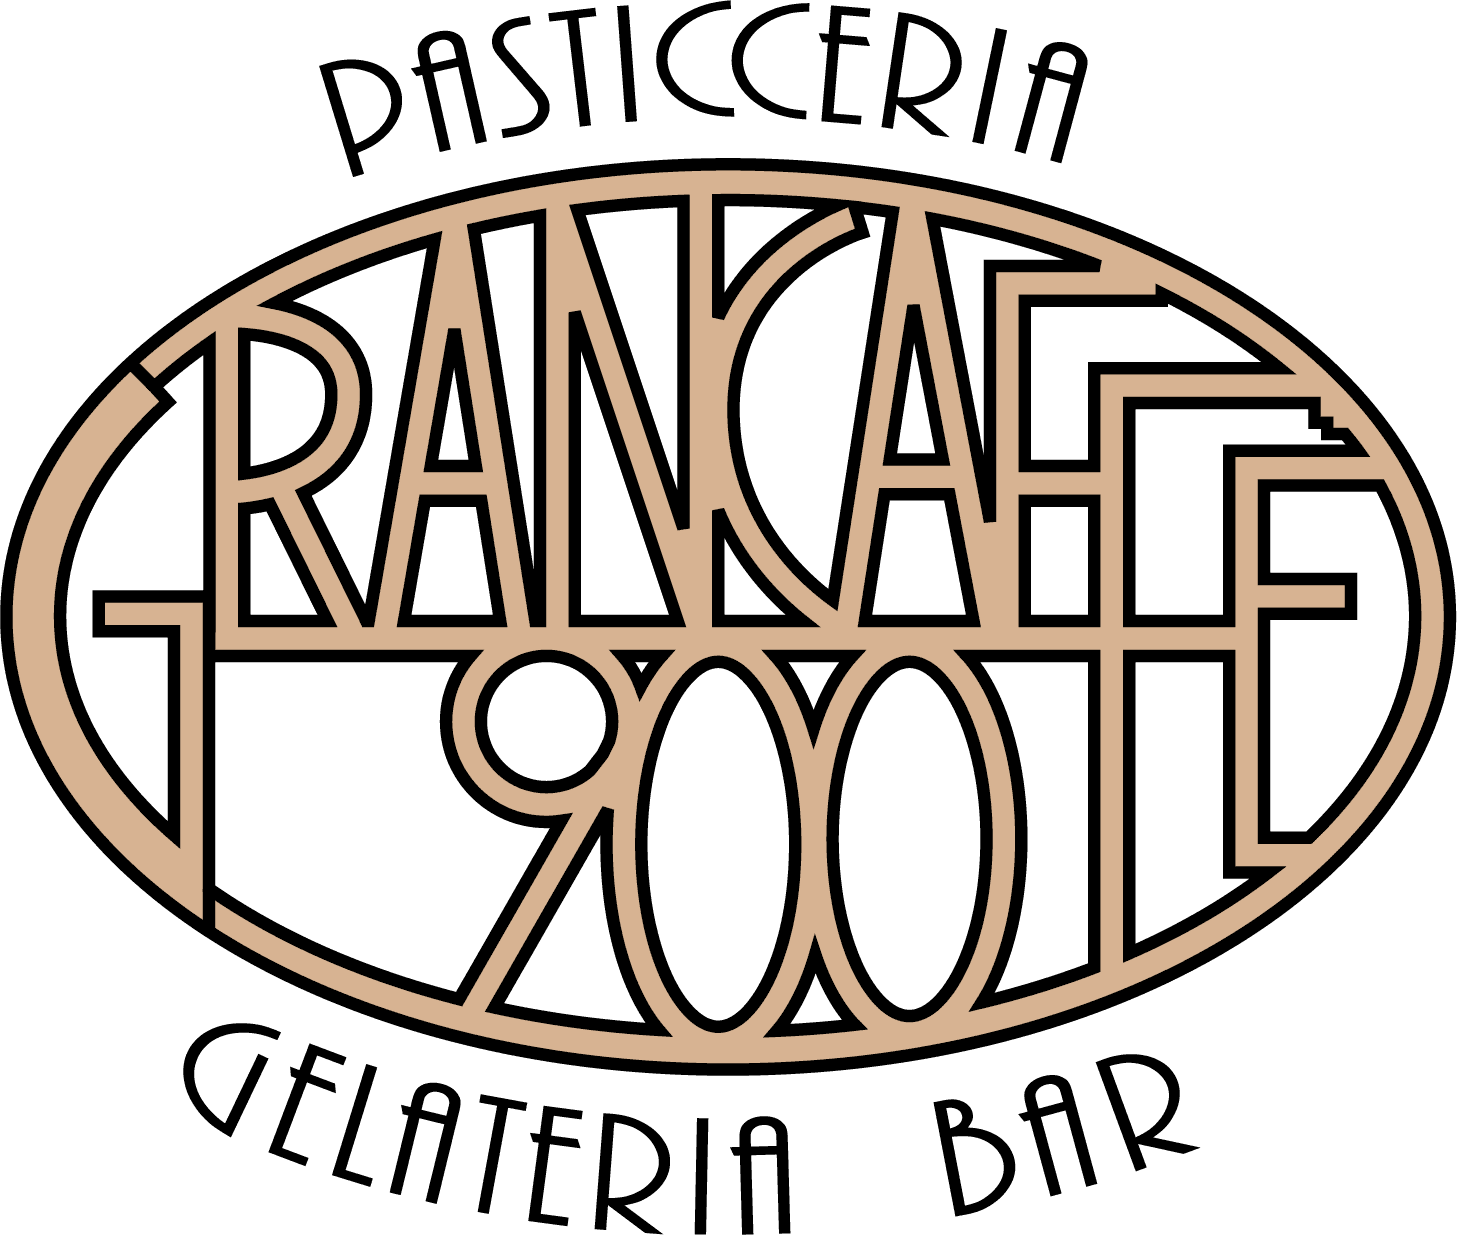 Pasticceria Grancaffè